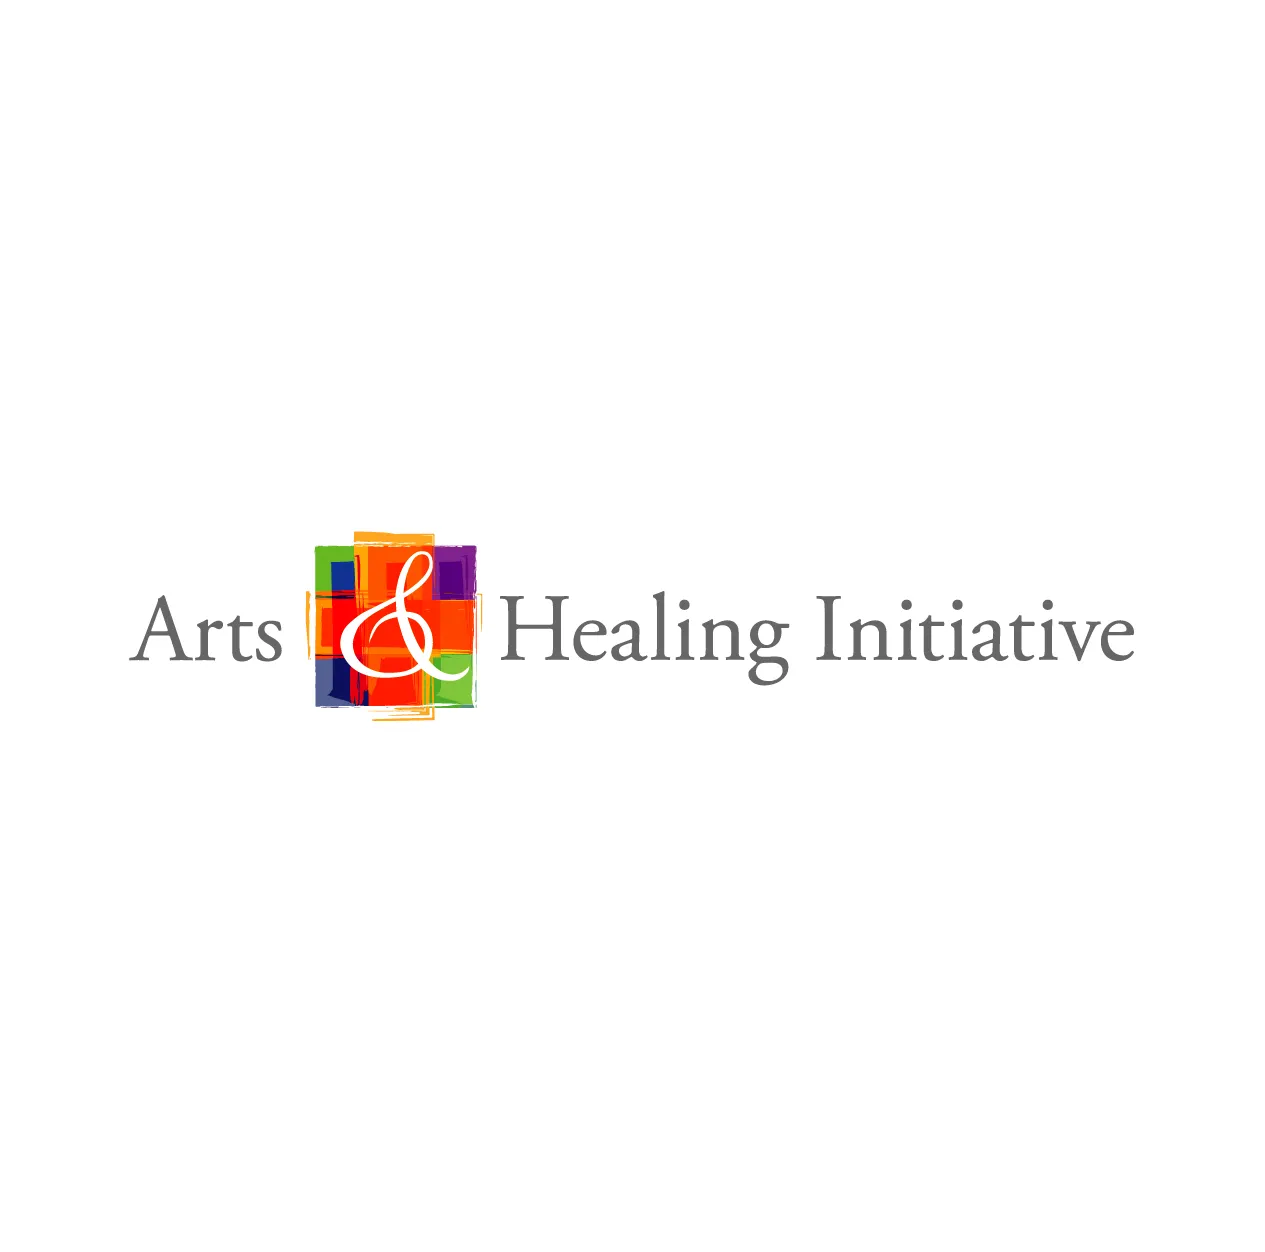 Arts & Healing Initiative Logo